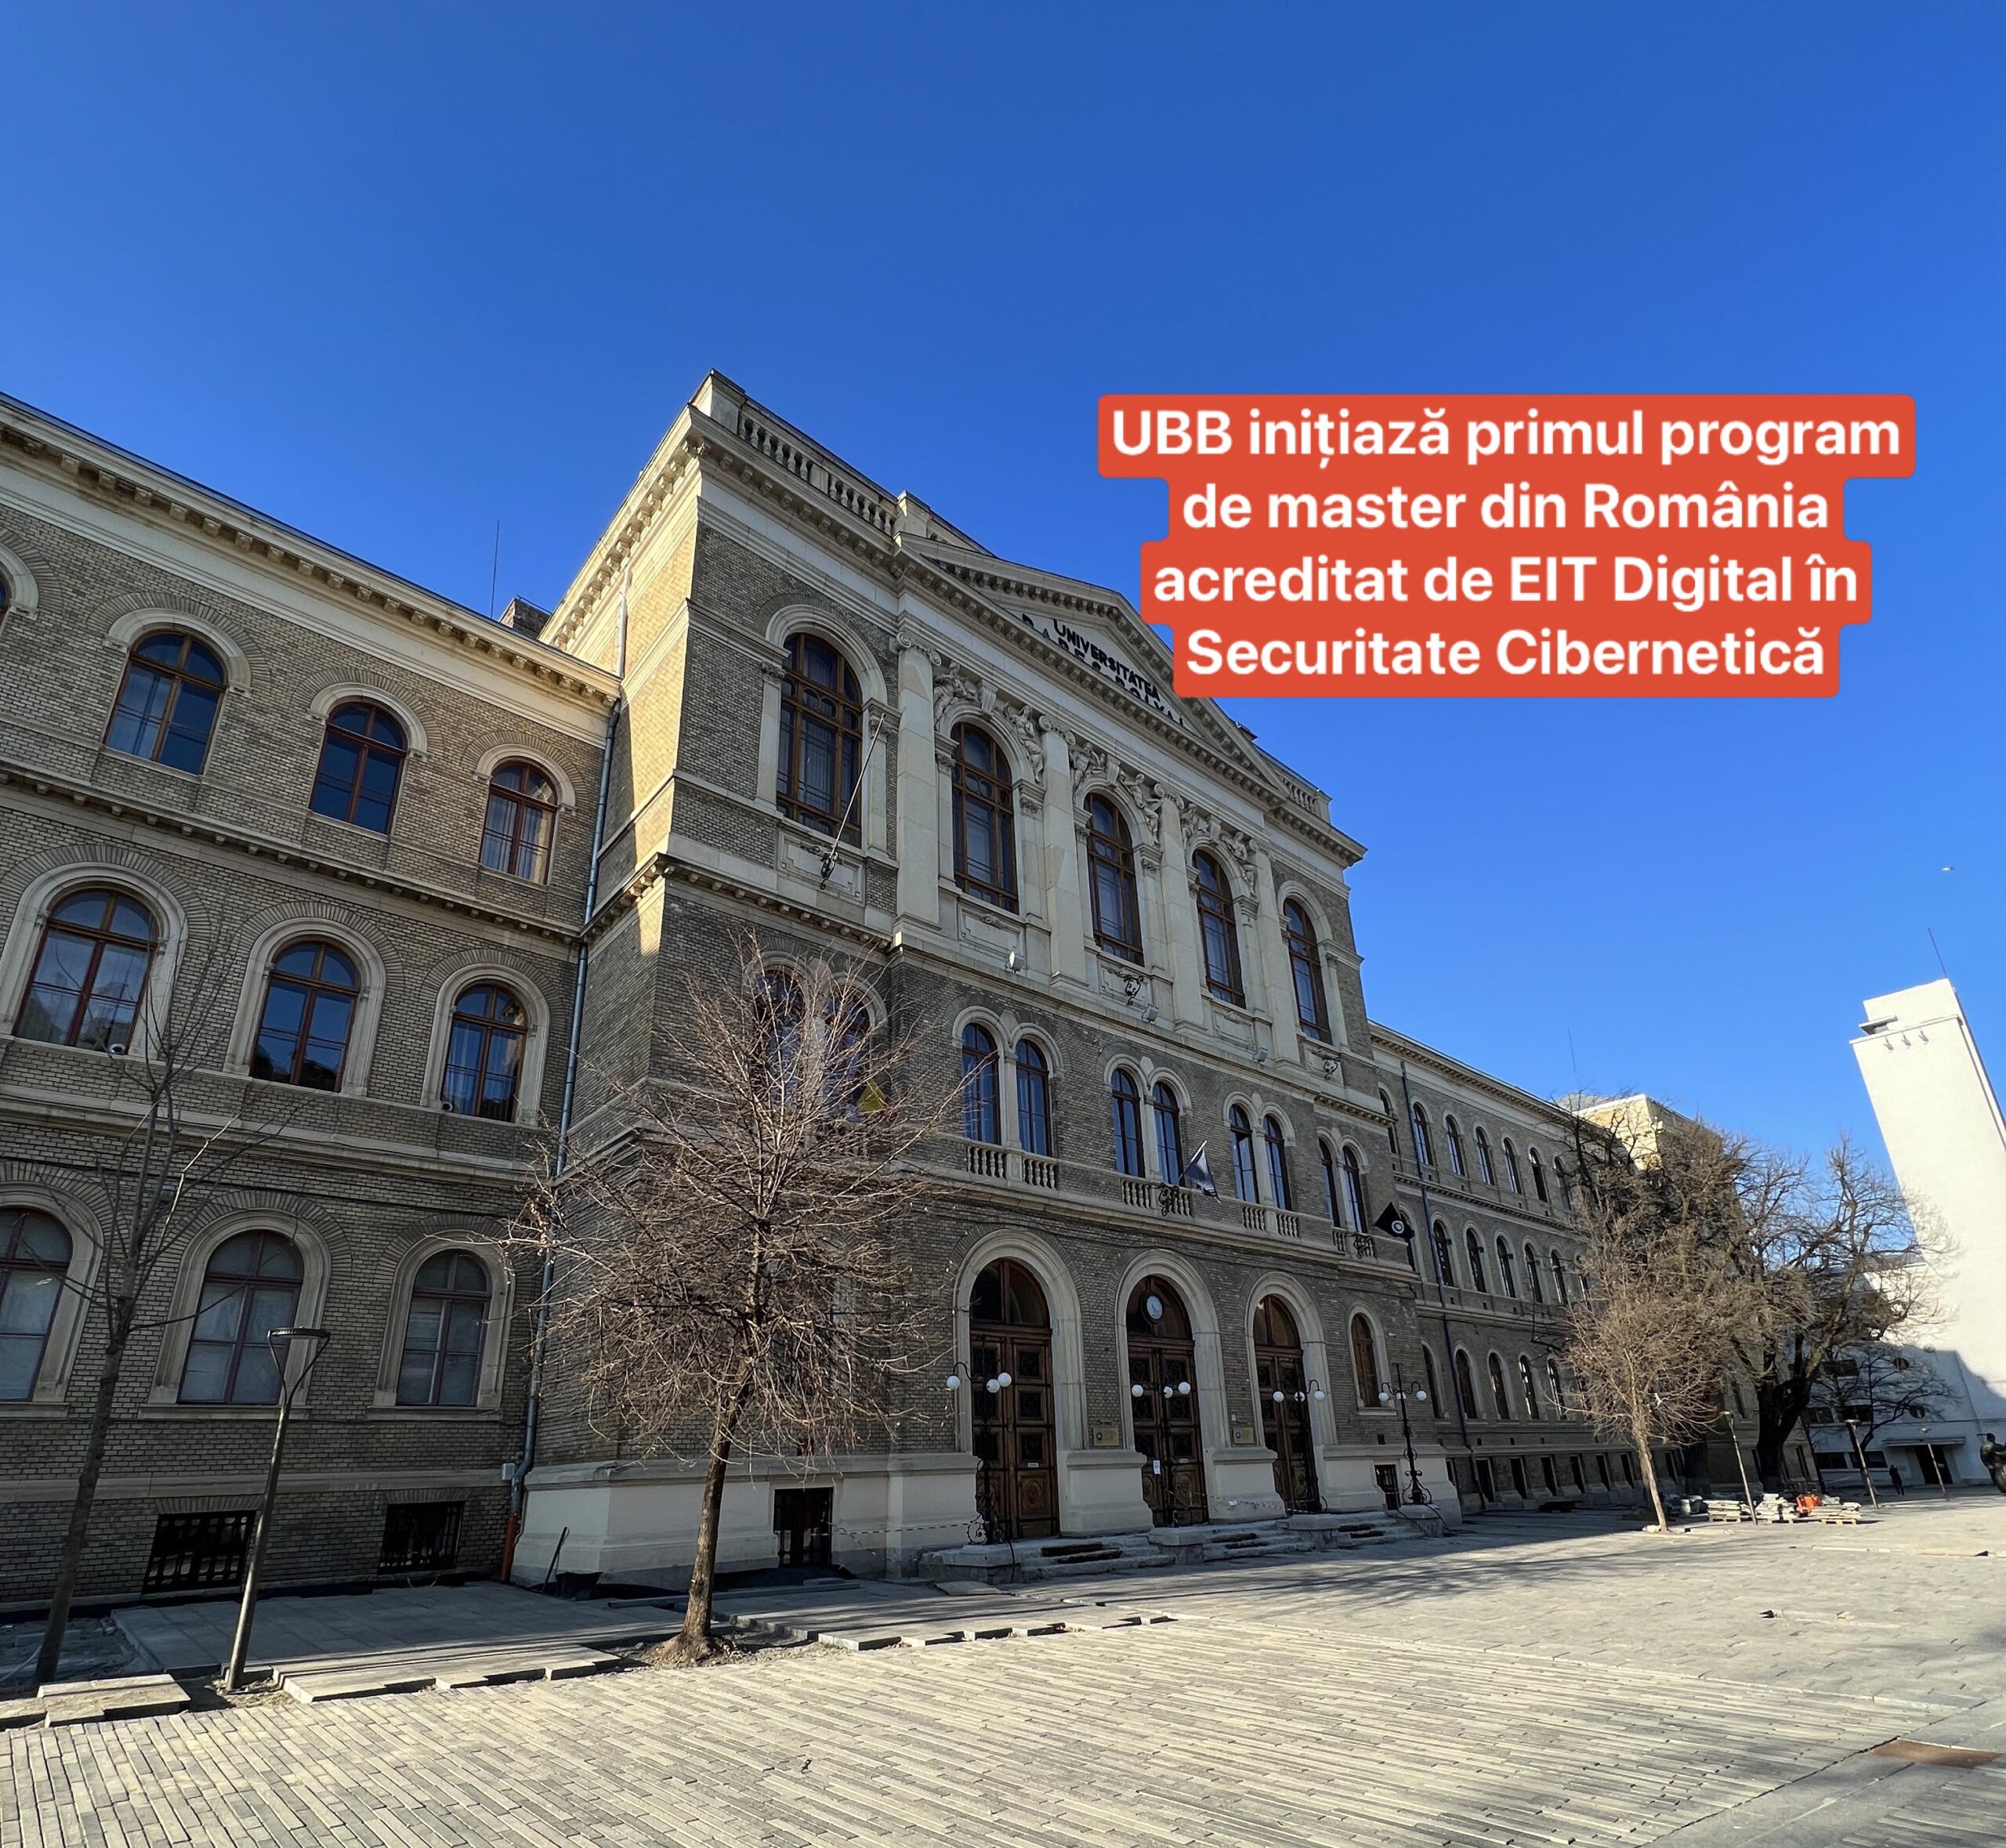 UBB inițiază primul program de master din România acreditat de EIT Digital în Securitate Cibernetică